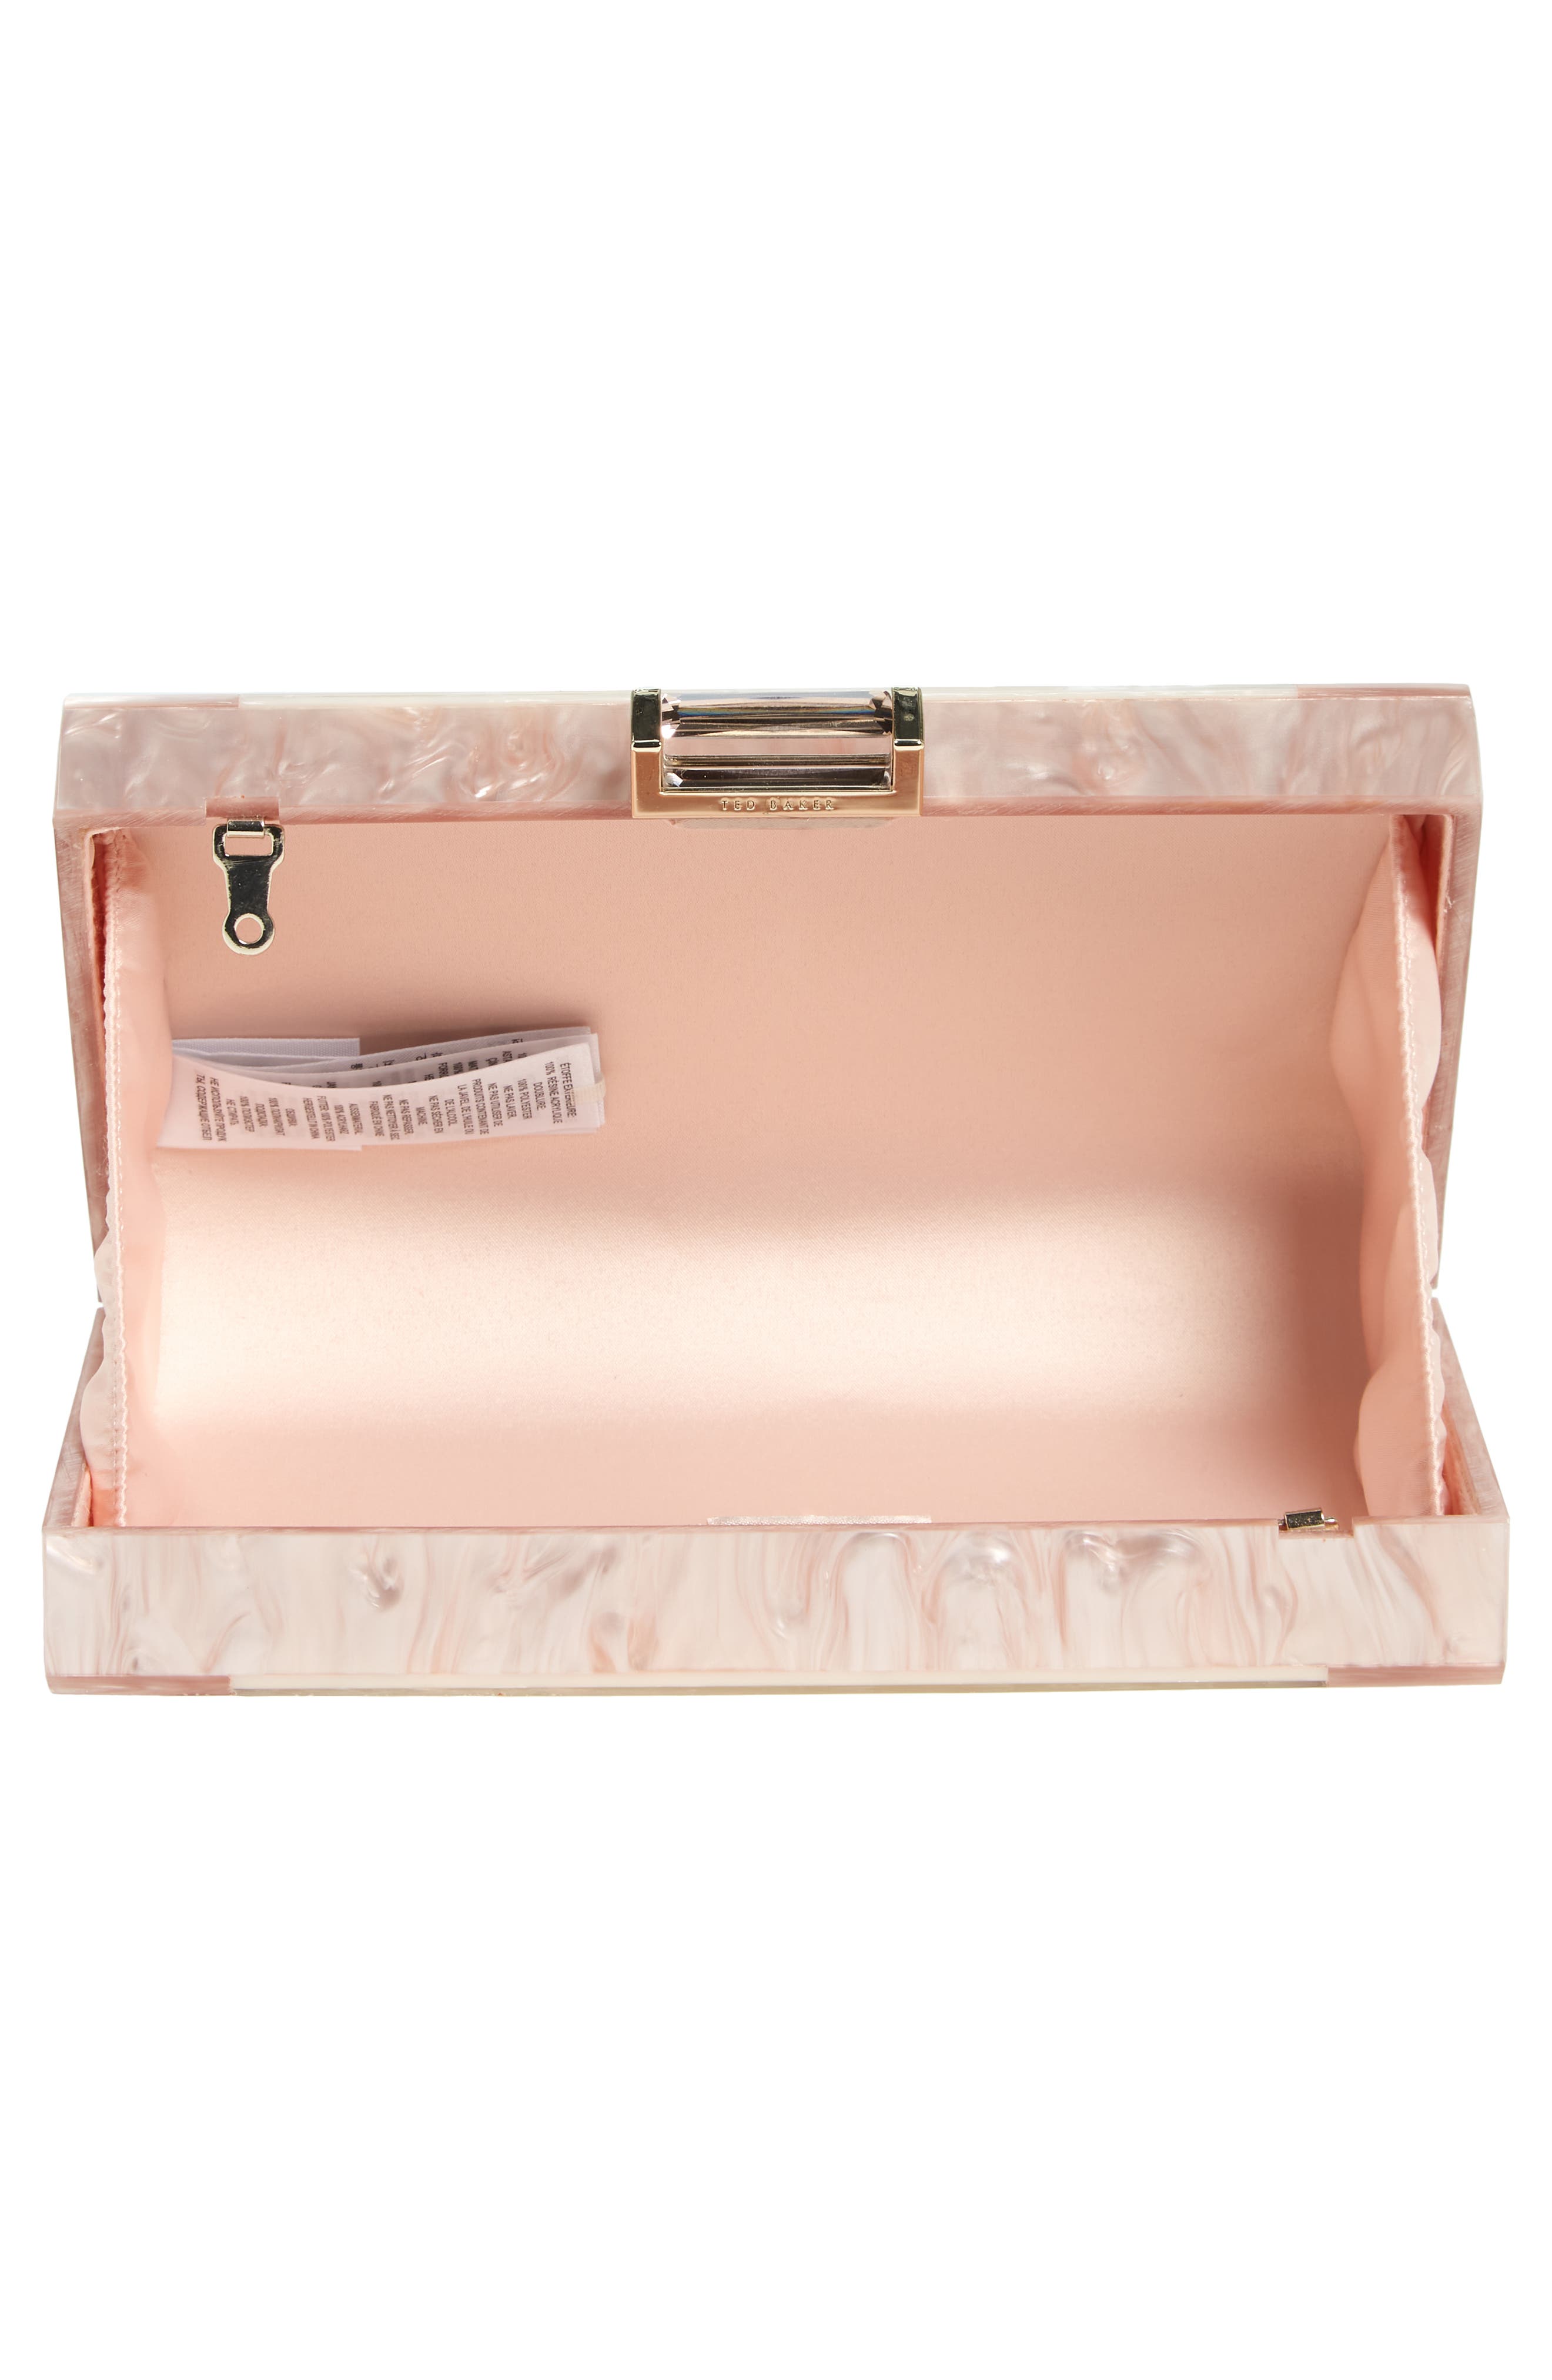 Ted Baker Handbag Pastel Pink and Rose Gold